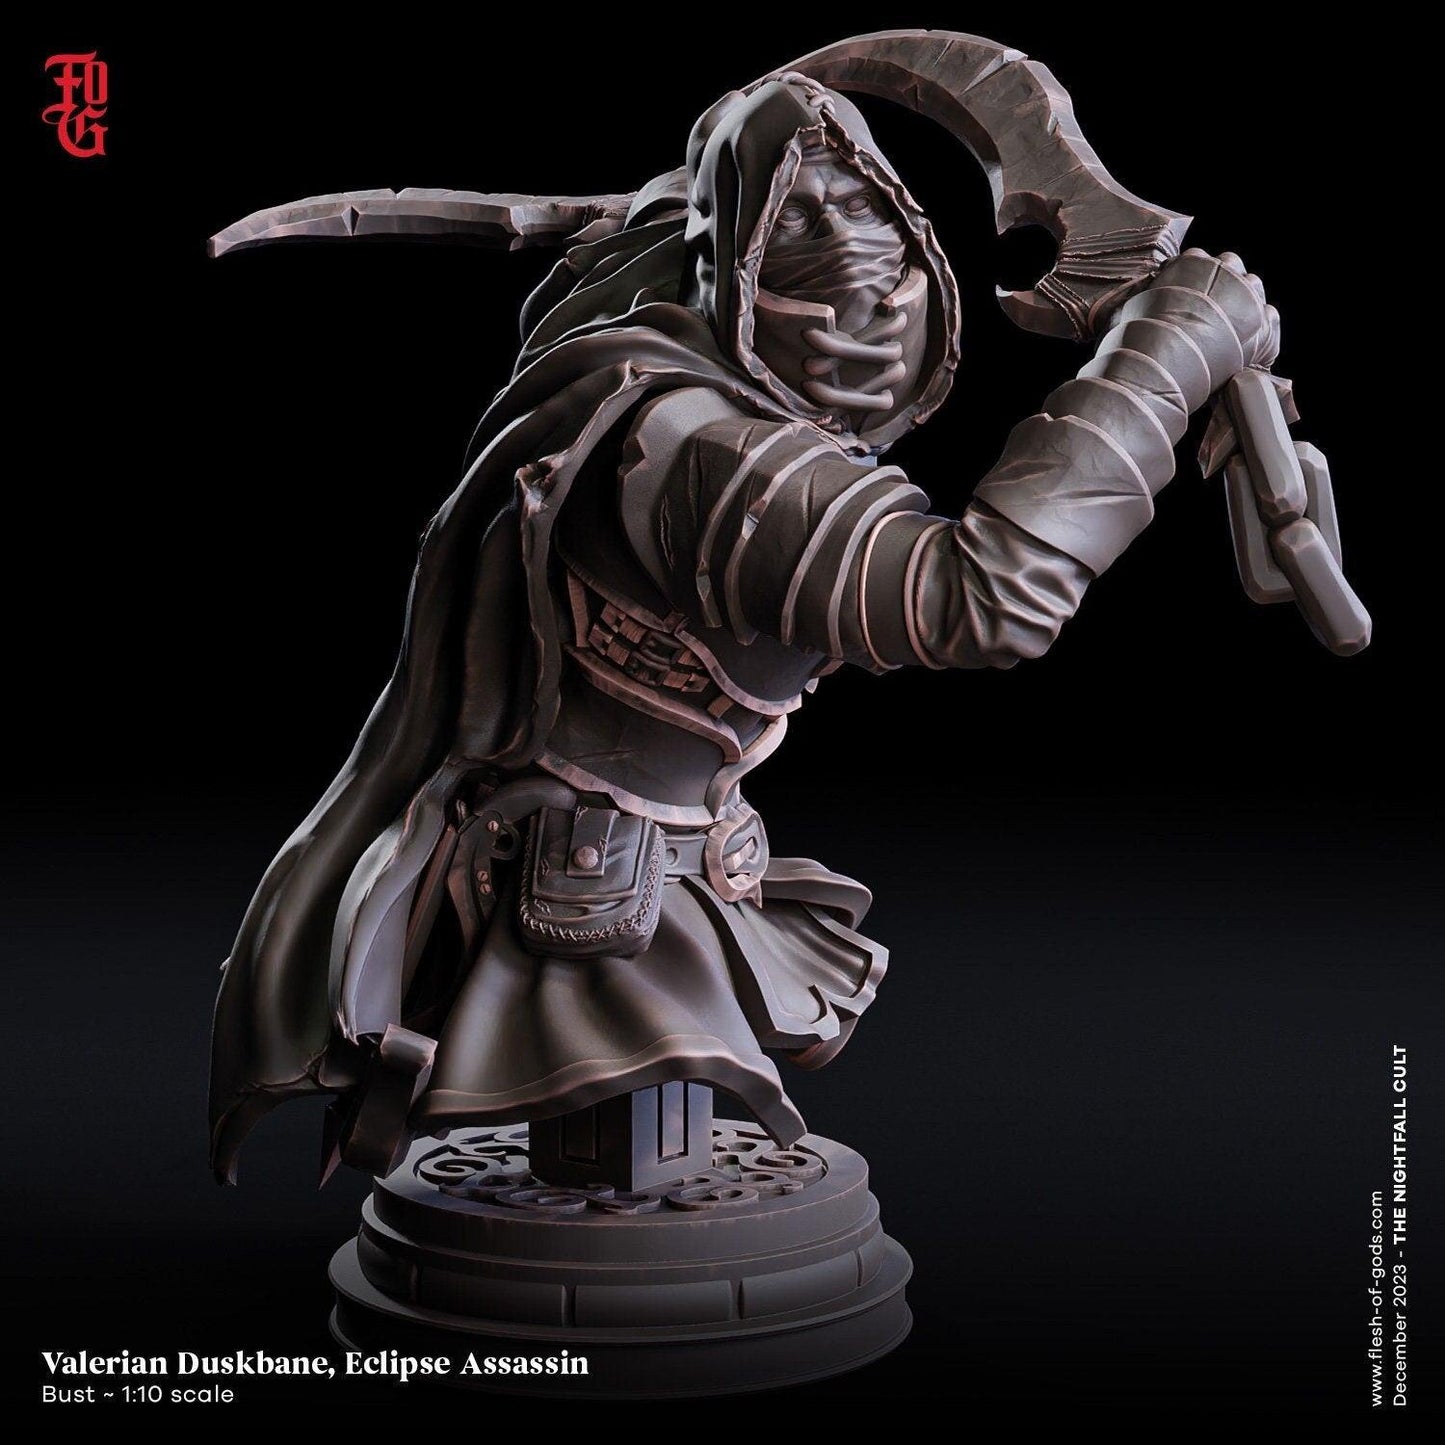 Valerian Duskbane Bust | Eclipse Assassin Rogue Resin Statue - Plague Miniatures